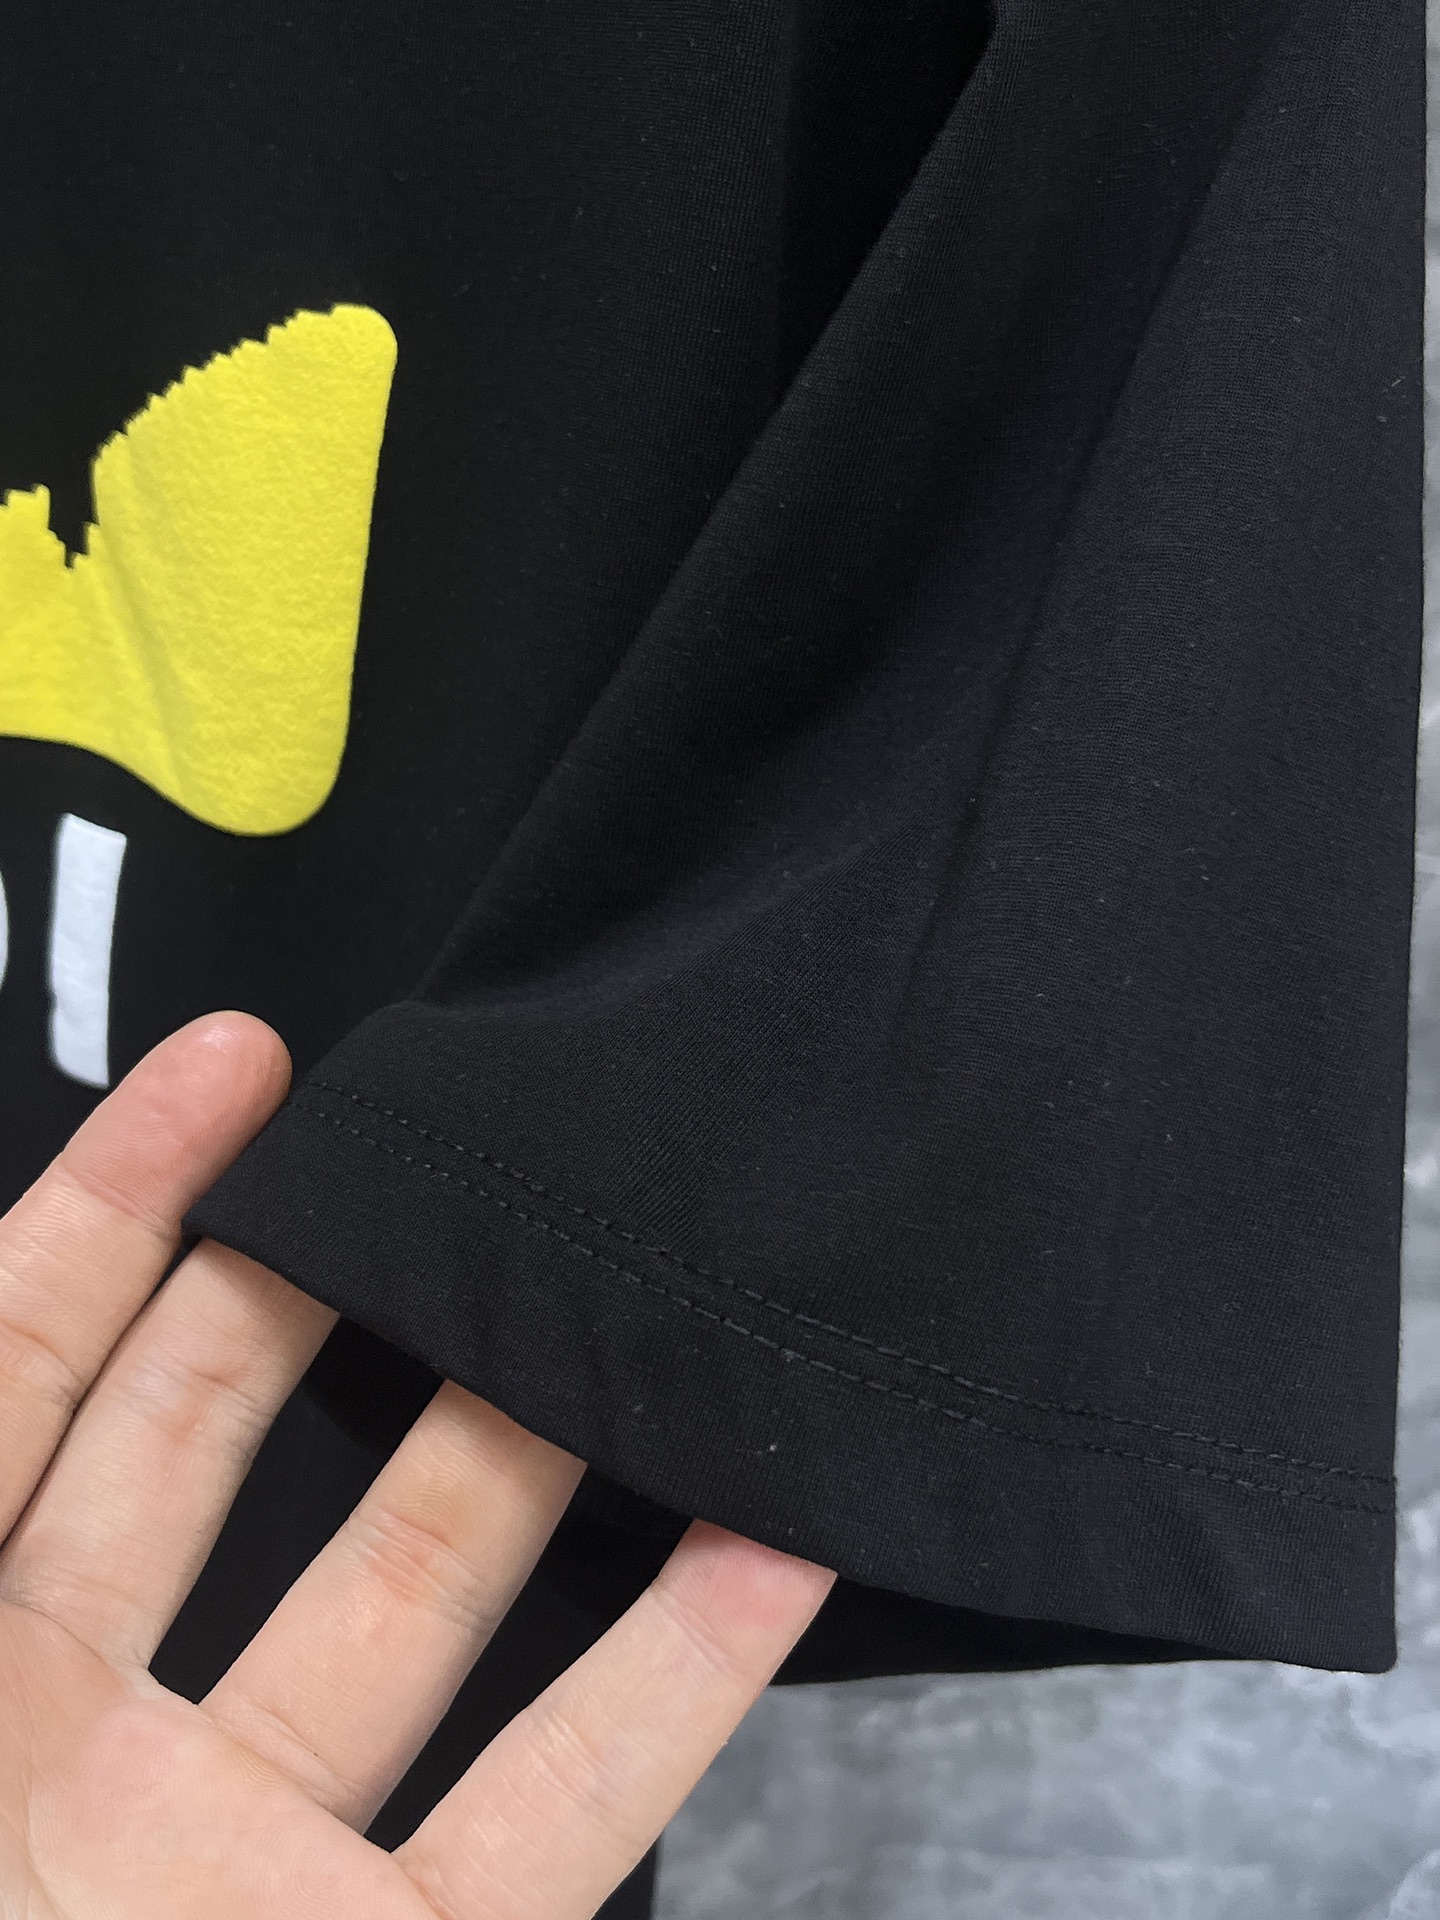 芬迪24SS春夏新款短袖T恤定制面料质地丝光棉面料采用原厂弹力绒面亲肤面料高弹力好伸缩采用品牌Logo标